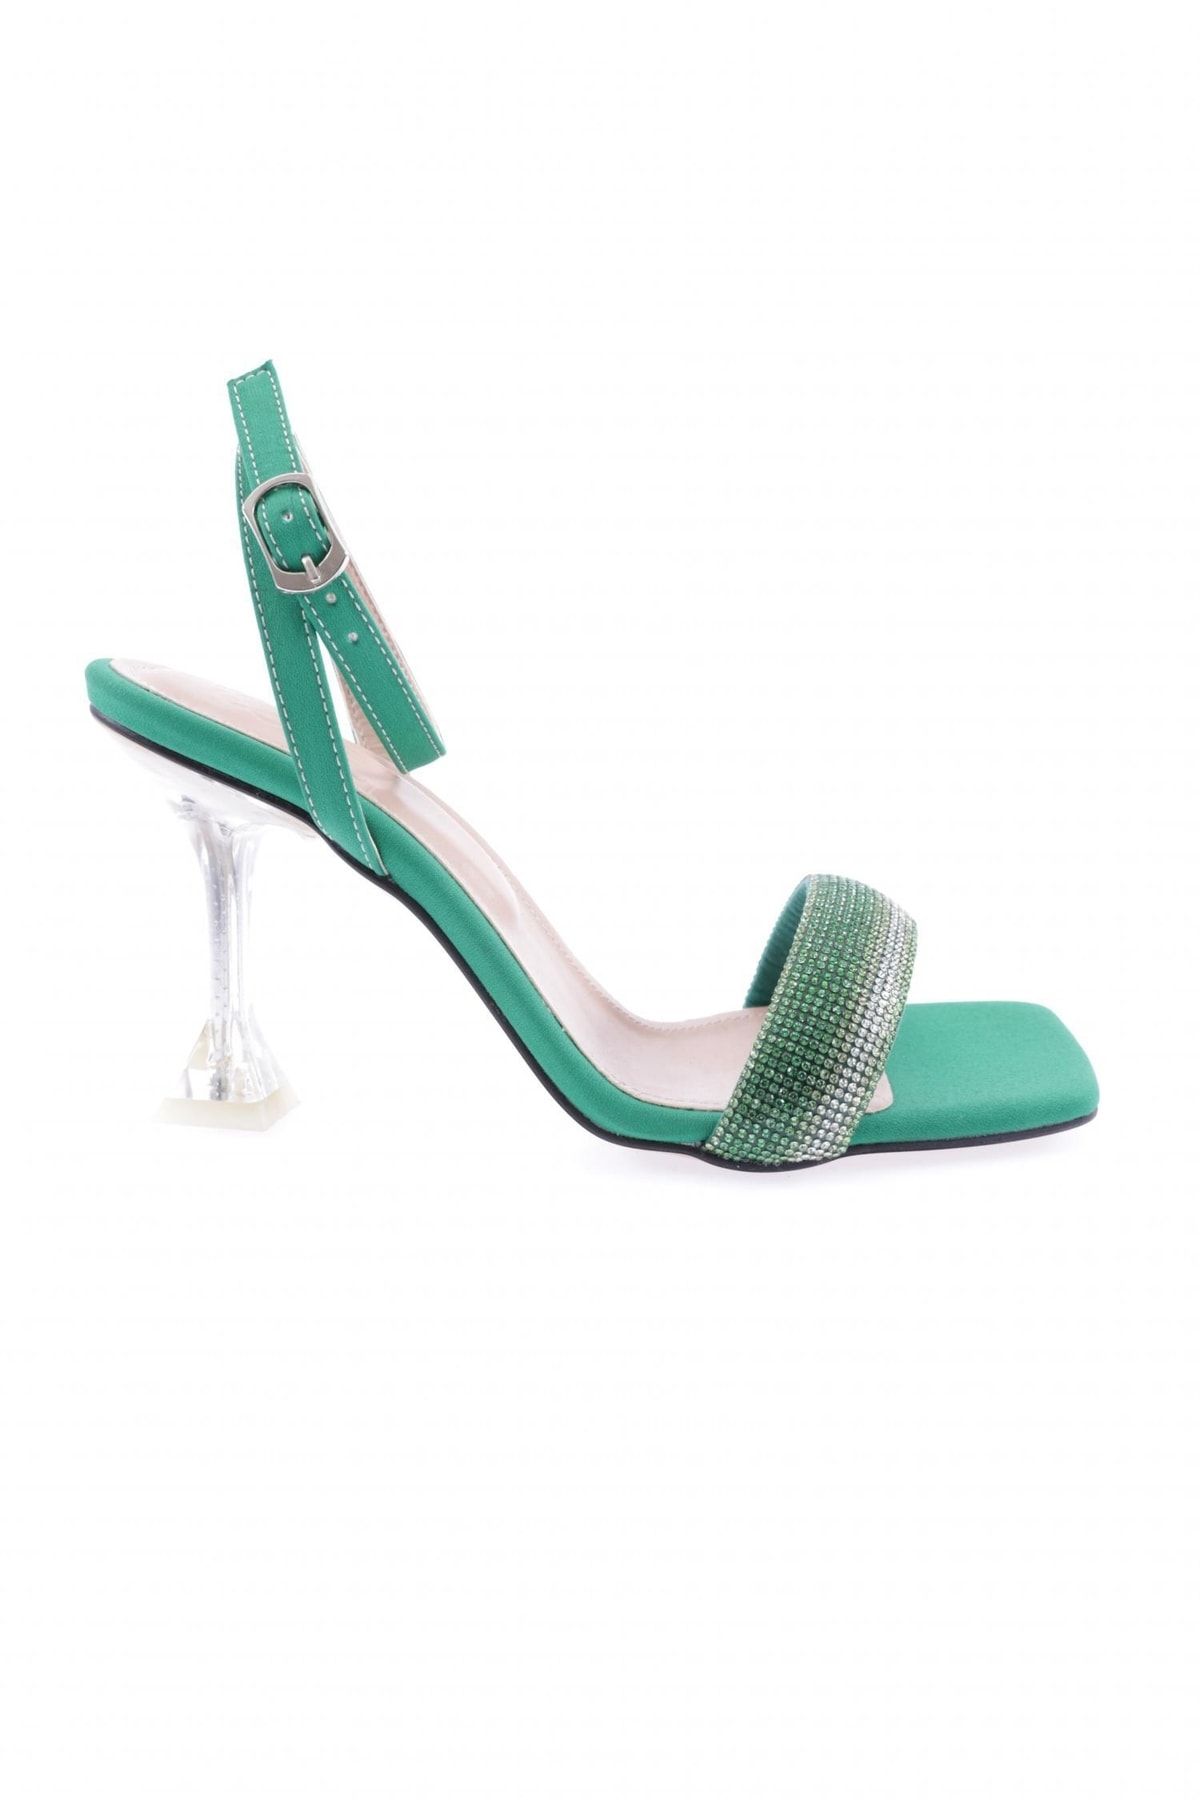 Dgn 5161-1-23y Kadin Silver Taşli Bilekten Bağli Topuklu Ayakkabı